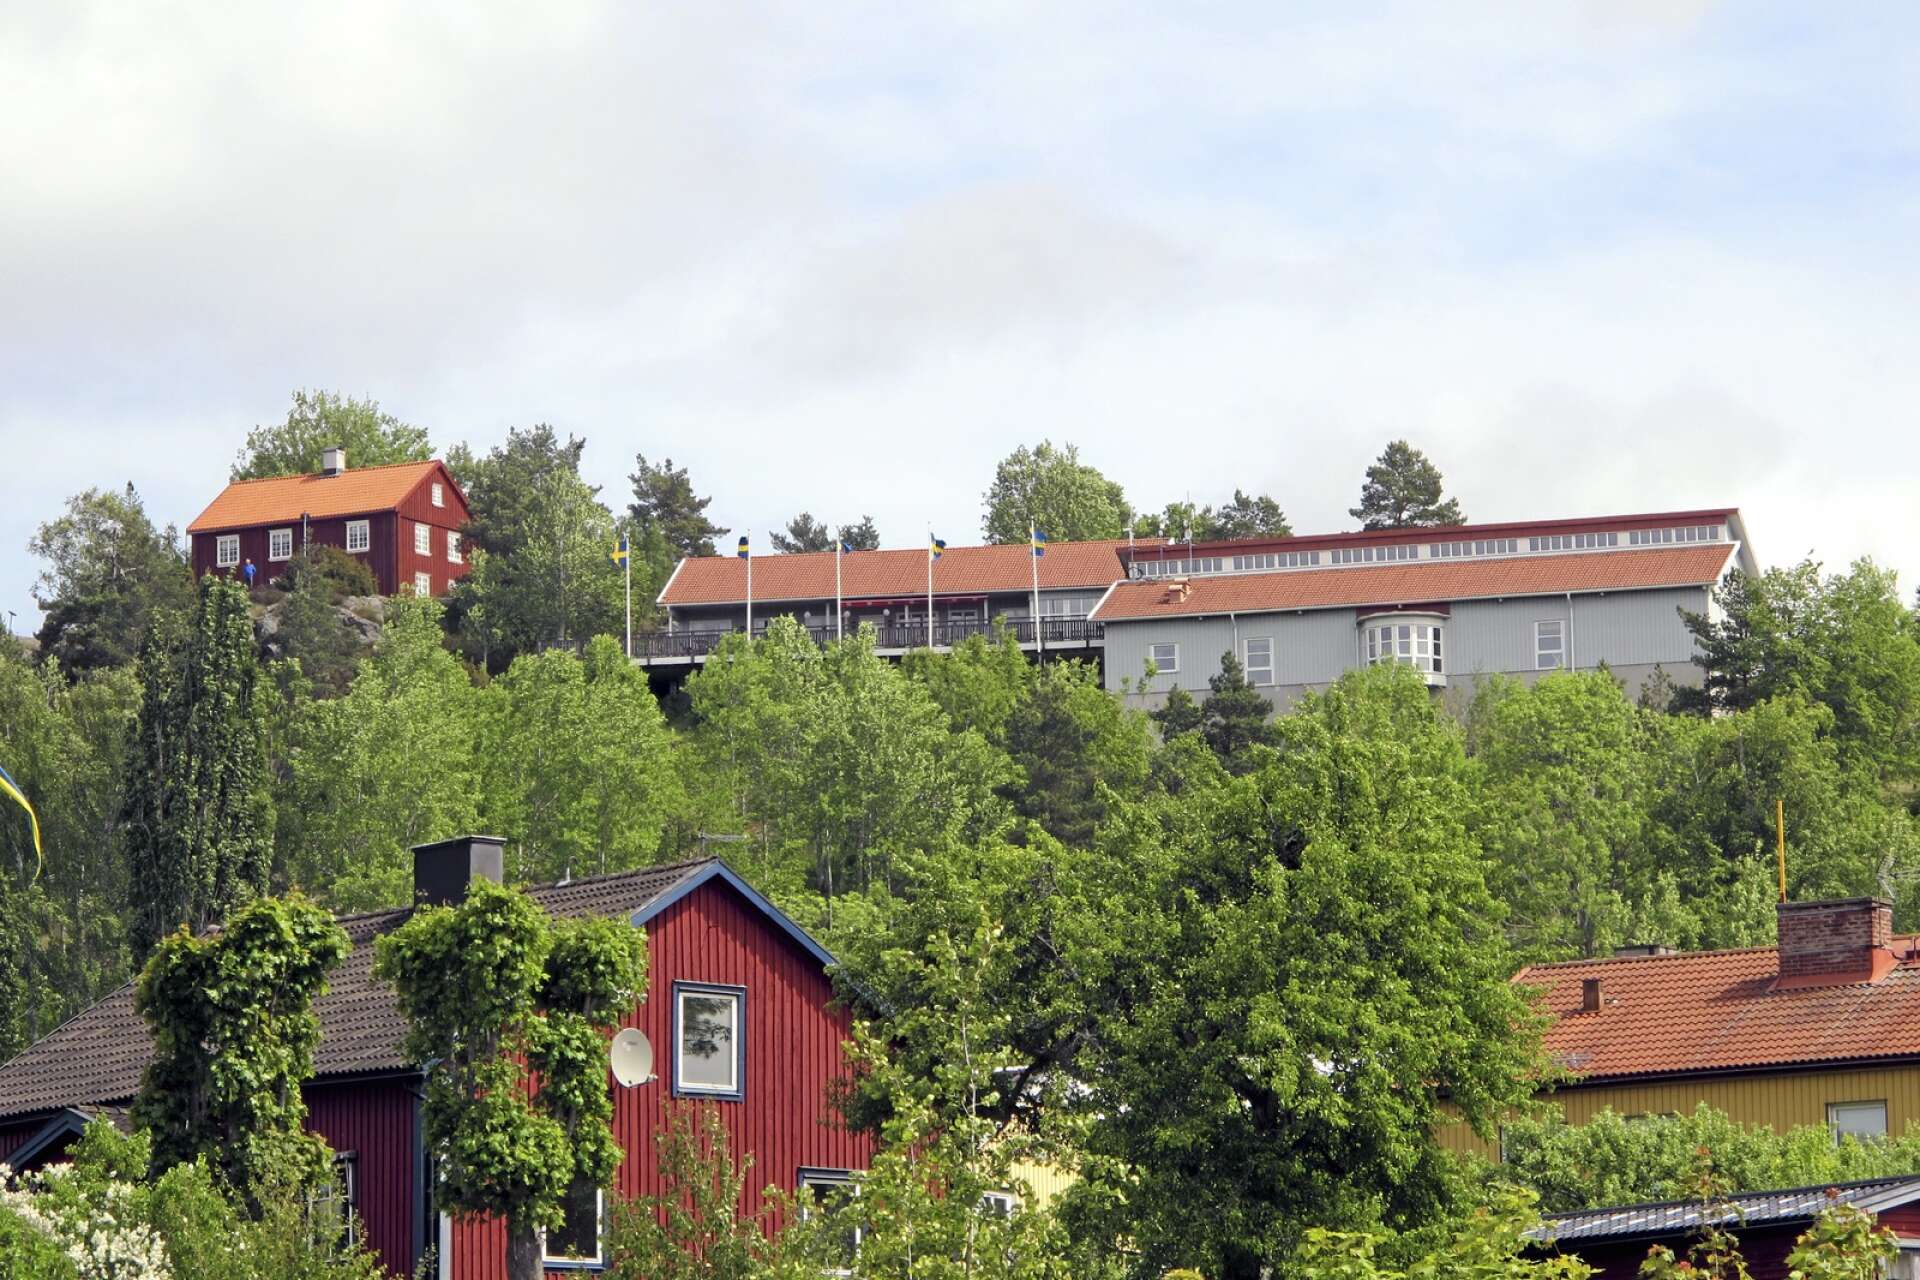 Halmens Hus med kaffestugan bredvid och Gammelgården ligger i anslutning till varandra på Majberget.